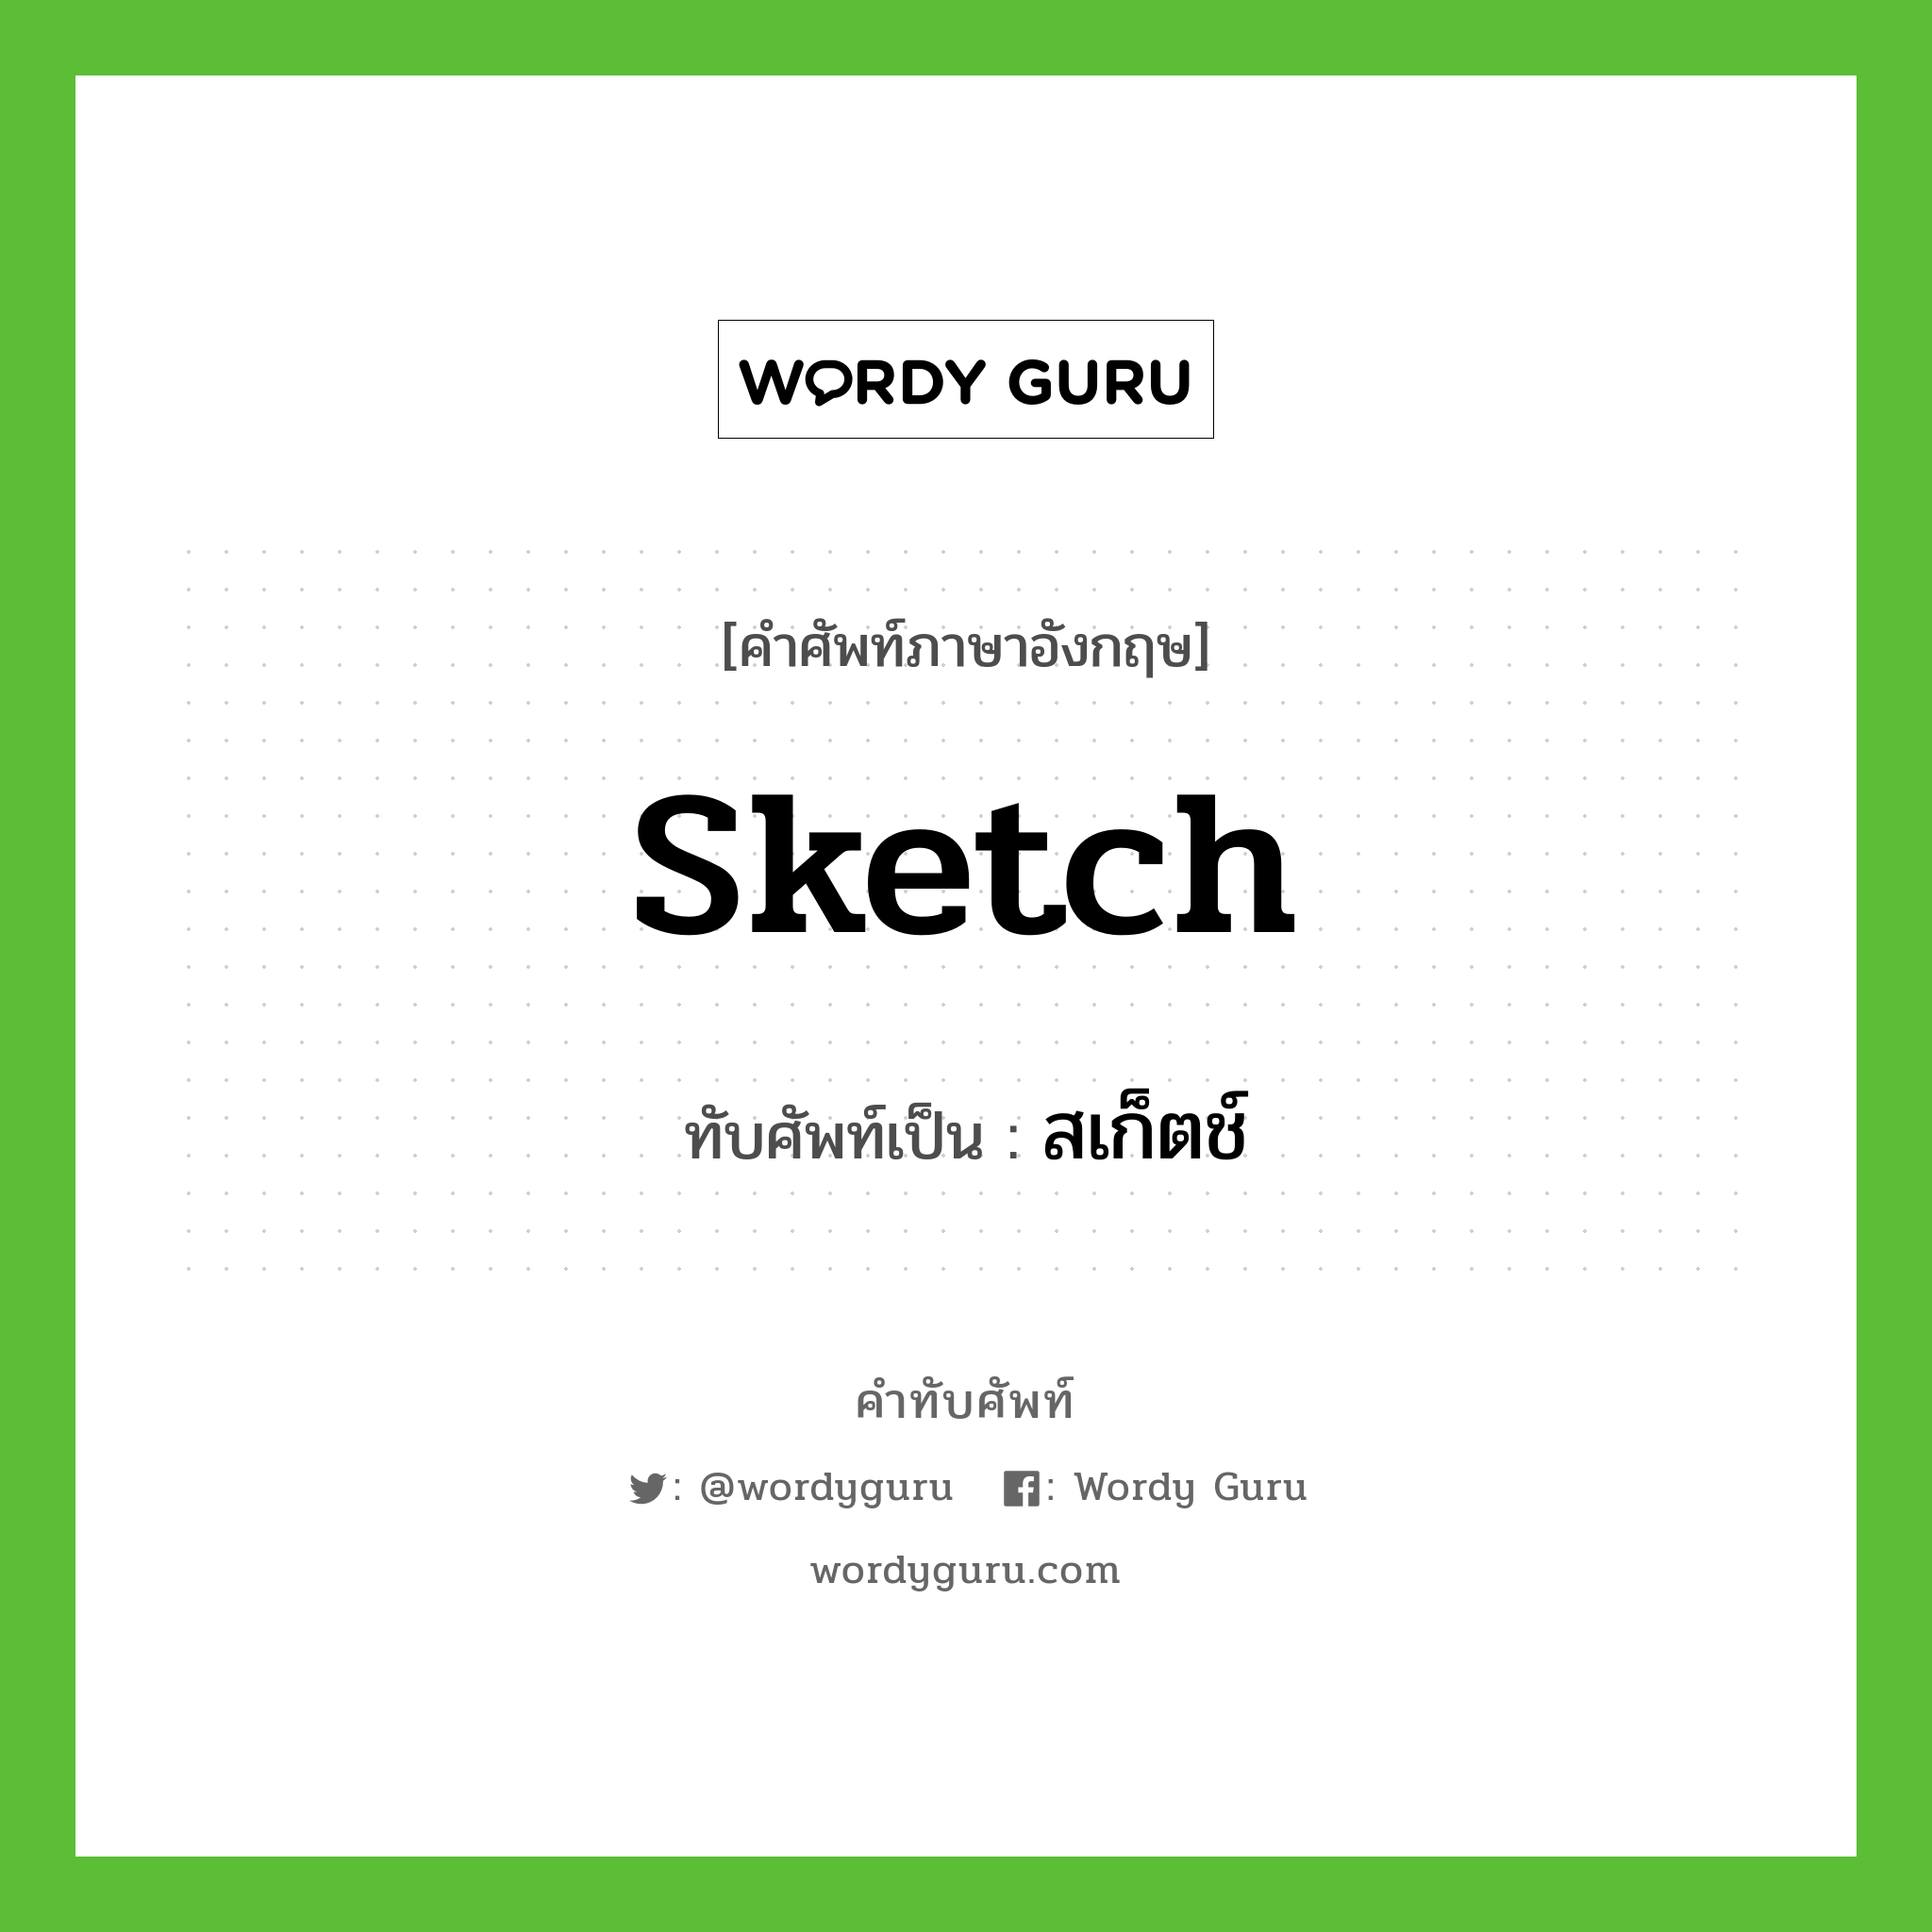 sketch เขียนเป็นคำไทยว่าอะไร?, คำศัพท์ภาษาอังกฤษ sketch ทับศัพท์เป็น สเก็ตช์